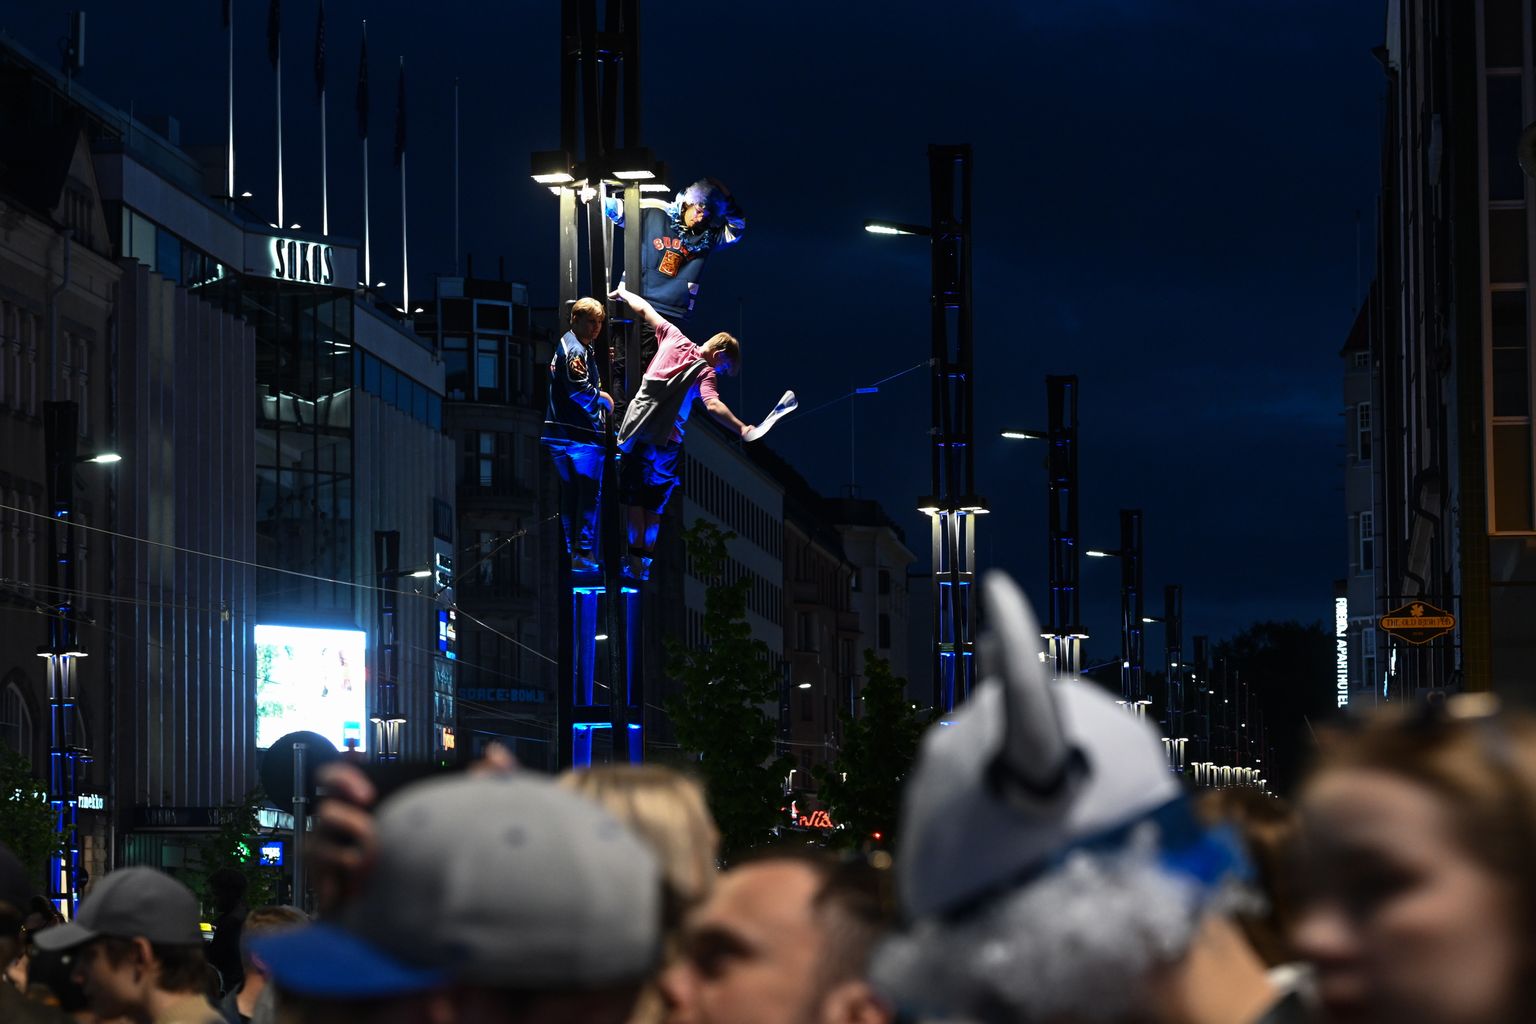 Soomlased tähistasid oma jäähokikoondise maailmameistriks tulemist 29. mail 2022. Pildil on tähistajaid näha Tamperes ronimas tänavavalgustusposti otsa